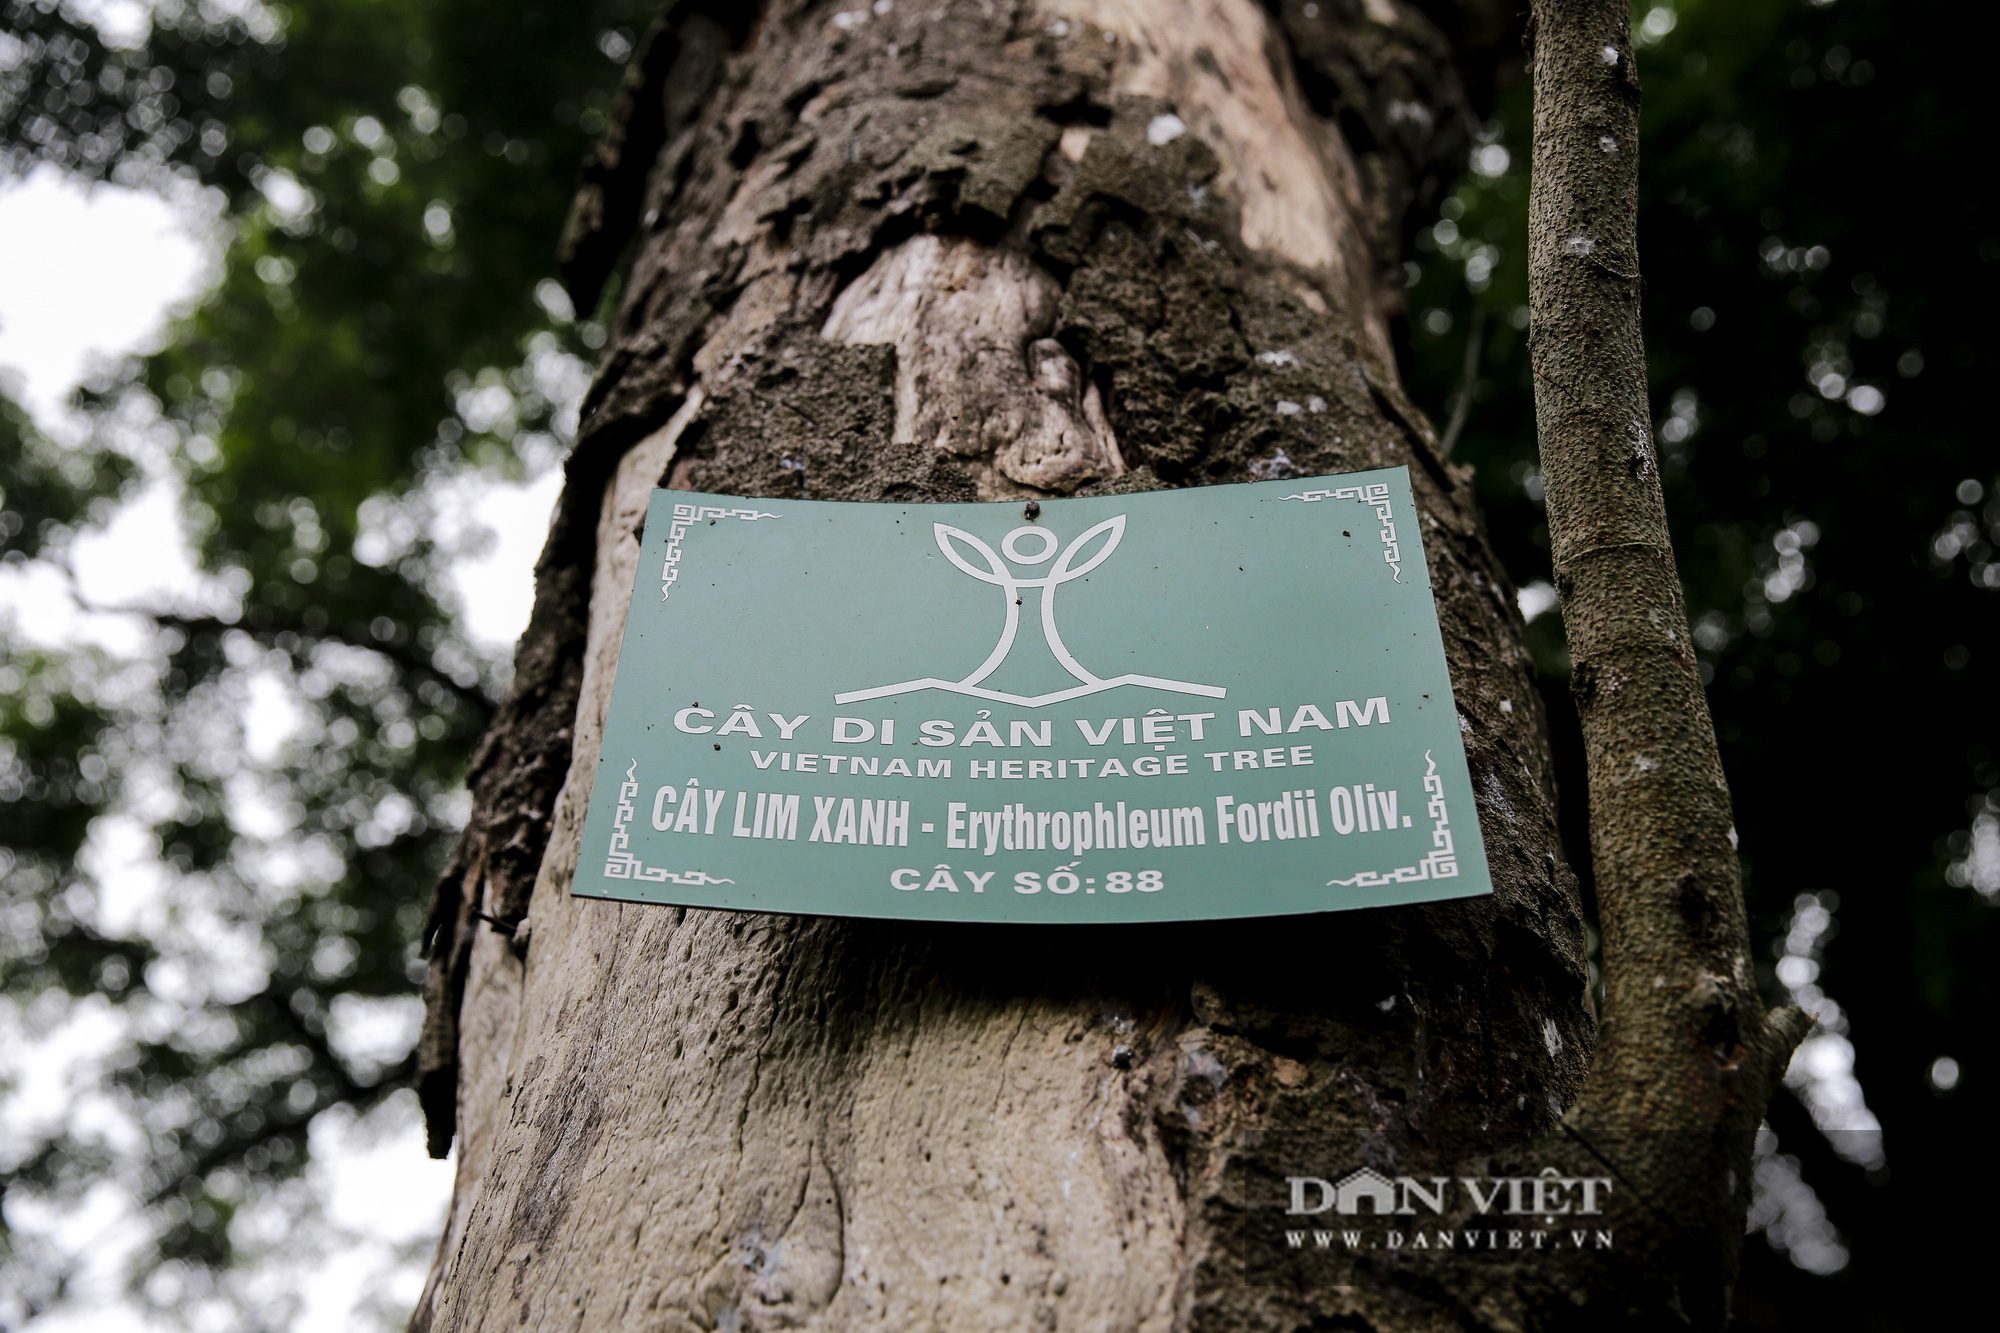 Choáng ngợp rừng lim xanh quý hiếm nghìn năm tuổi tại Hà Nội - Ảnh 3.